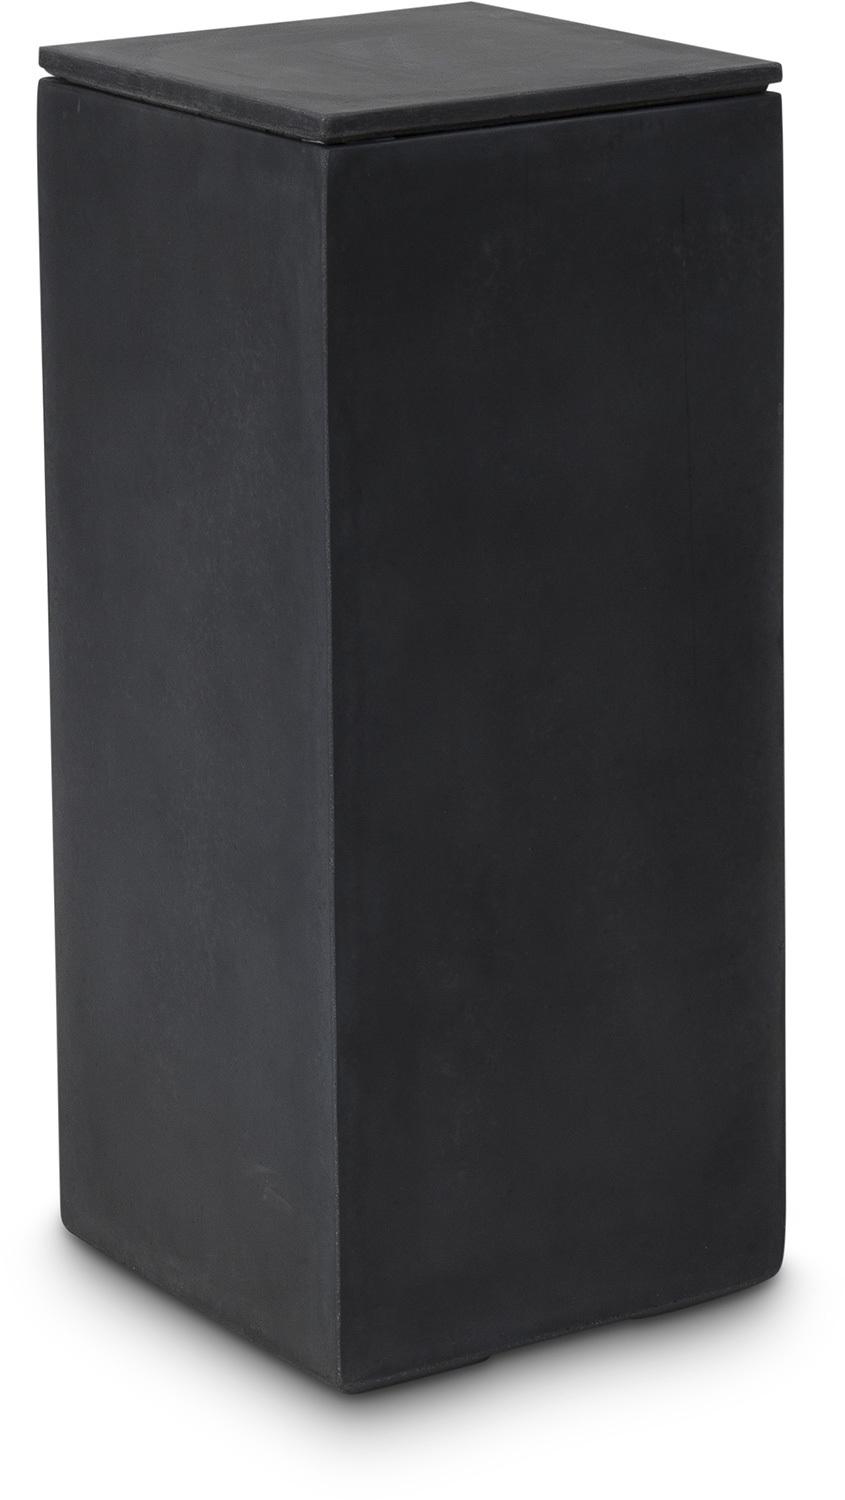 DIVISION PLUS lid, 35x35/3 cm, anthracite